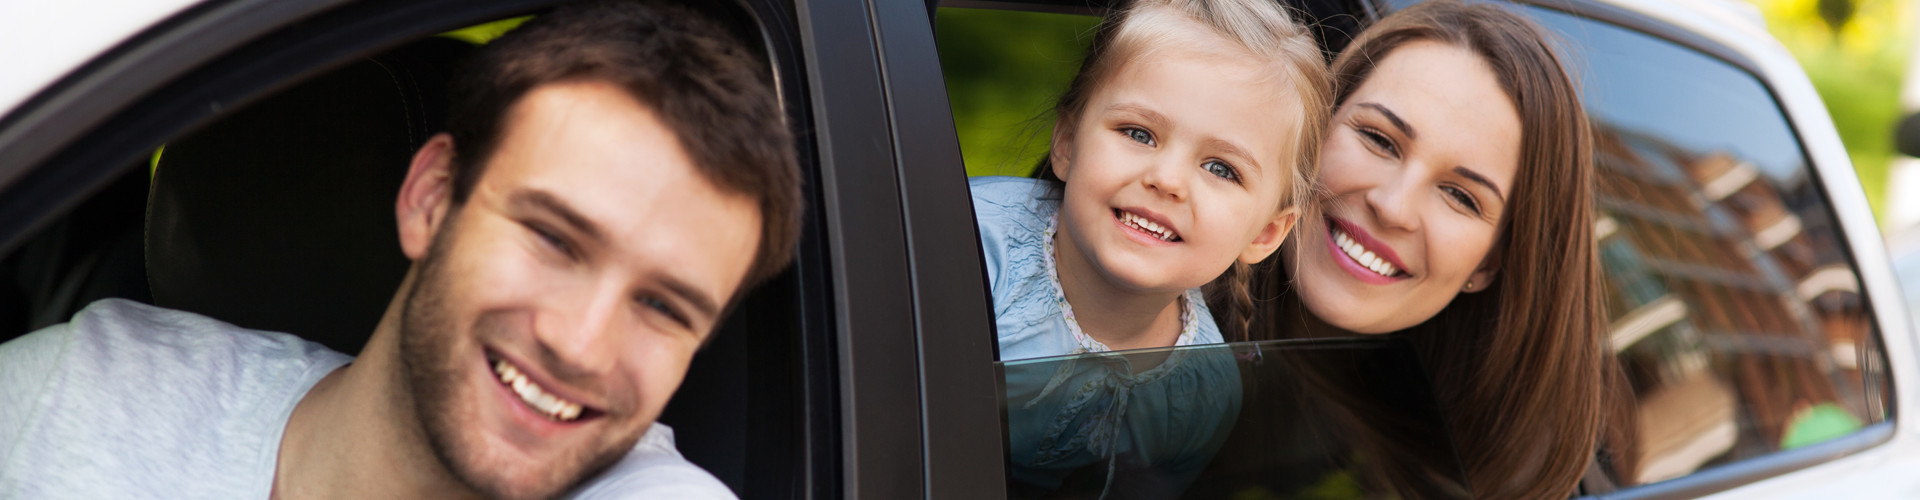 Mann blickt vom Fahrersitz aus dem Fenster eines weißen Autos, Frau und Kind blicken aus dem hinteren Fenster.